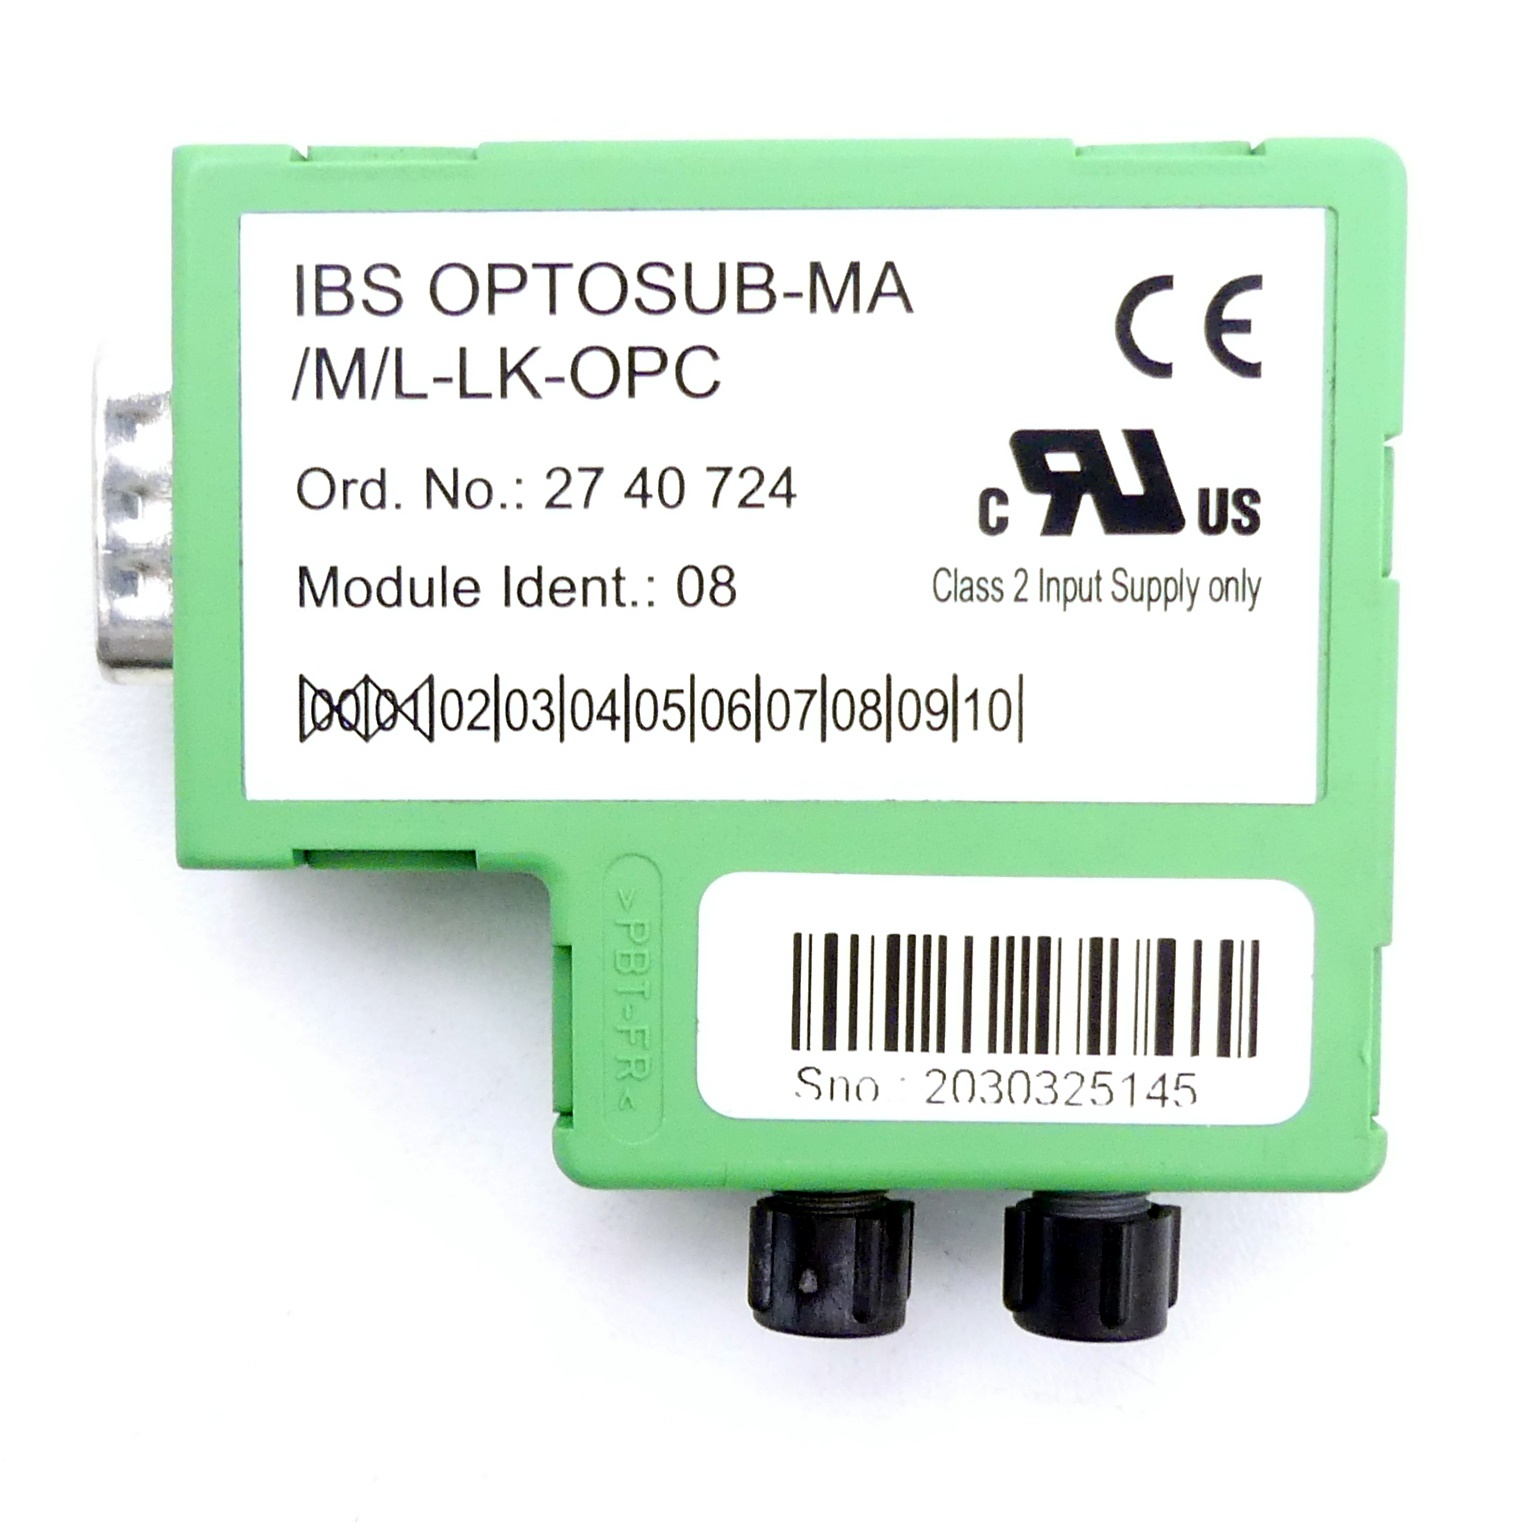 Lichtwellenleiter-Umsetzer IBS OPTOSUB-MA/M/L-LK-OPC 